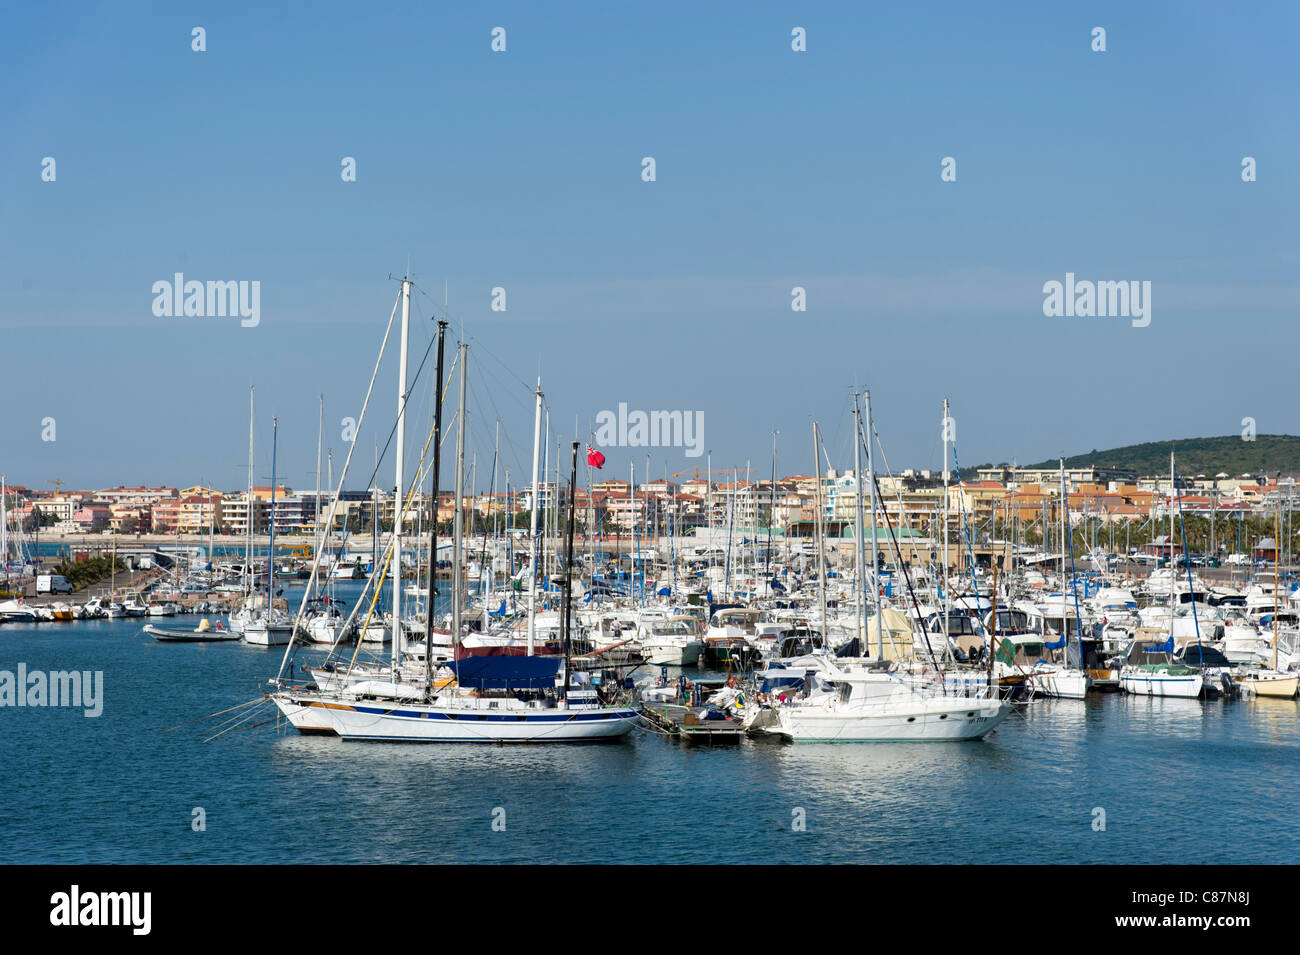 Yachts in the marina, Alghero, Sardinia, Italy Stock Photo